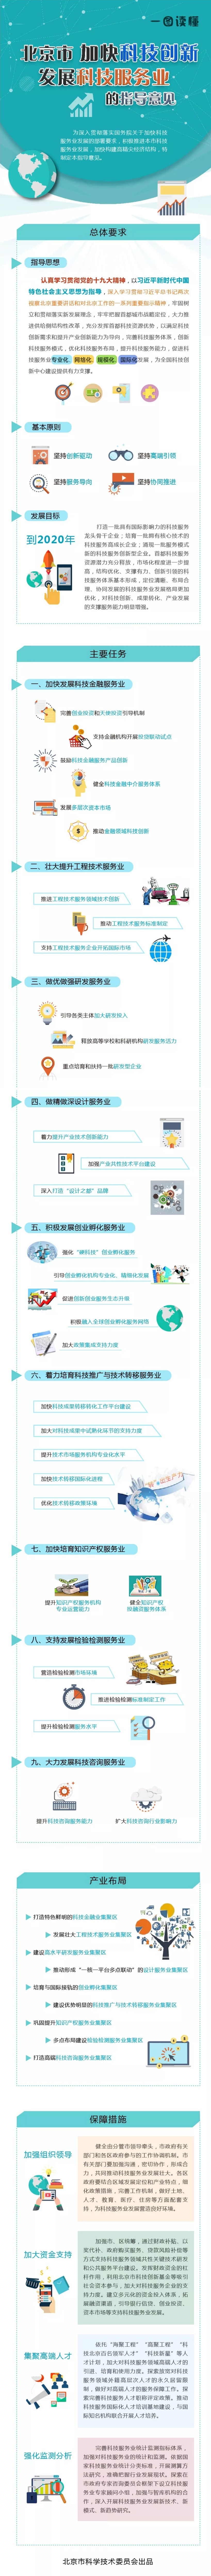 北京市加快科技创新发展科技服务业的指导意见